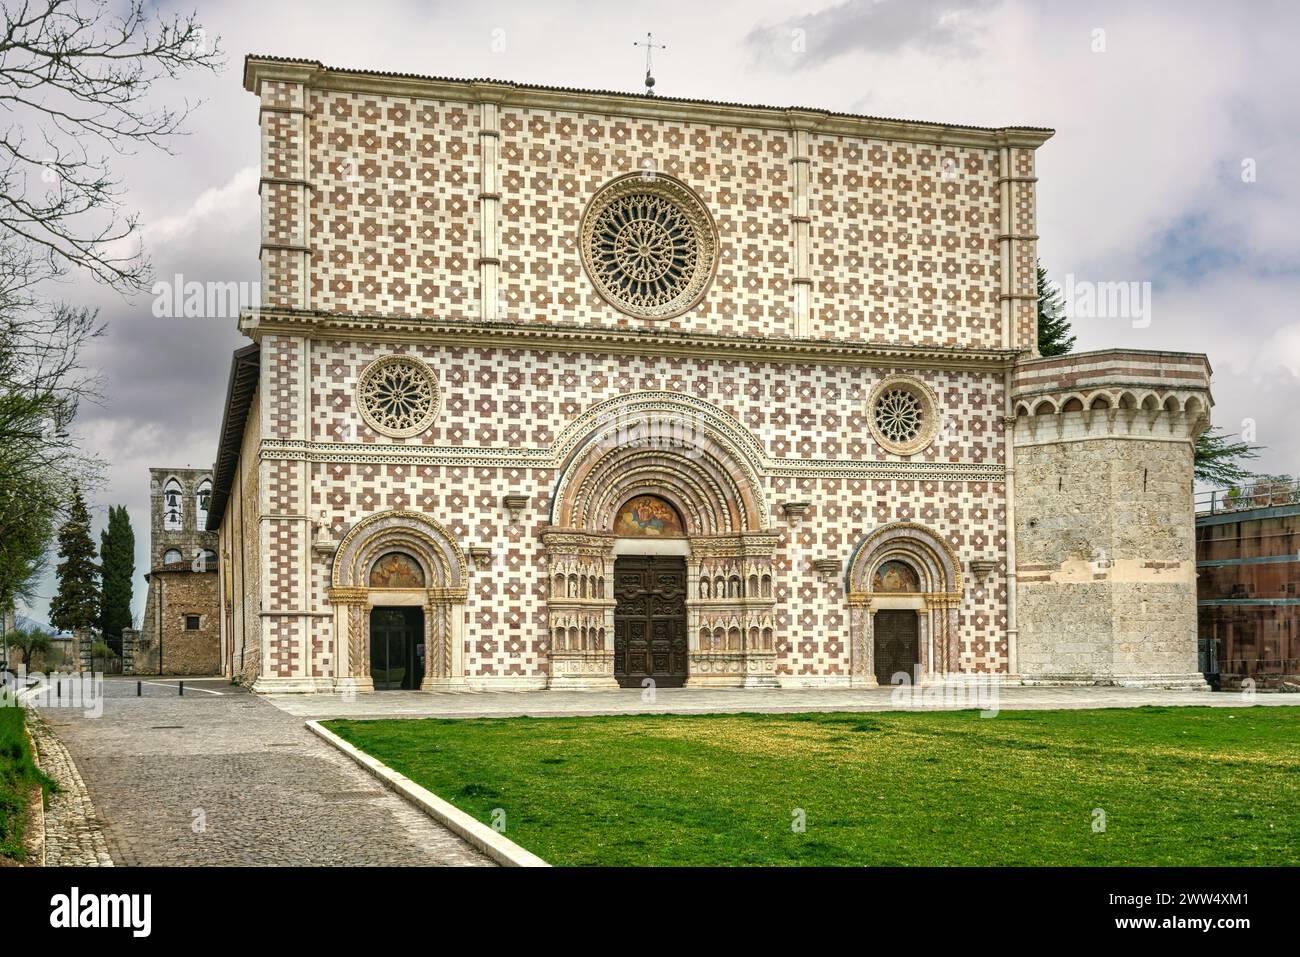 Die Fassade der Basilika Santa Maria di Collemaggio ist im romanisch-gotischen Stil gehalten. L'Aquila, Abruzzen, Italien, Europa Stockfoto